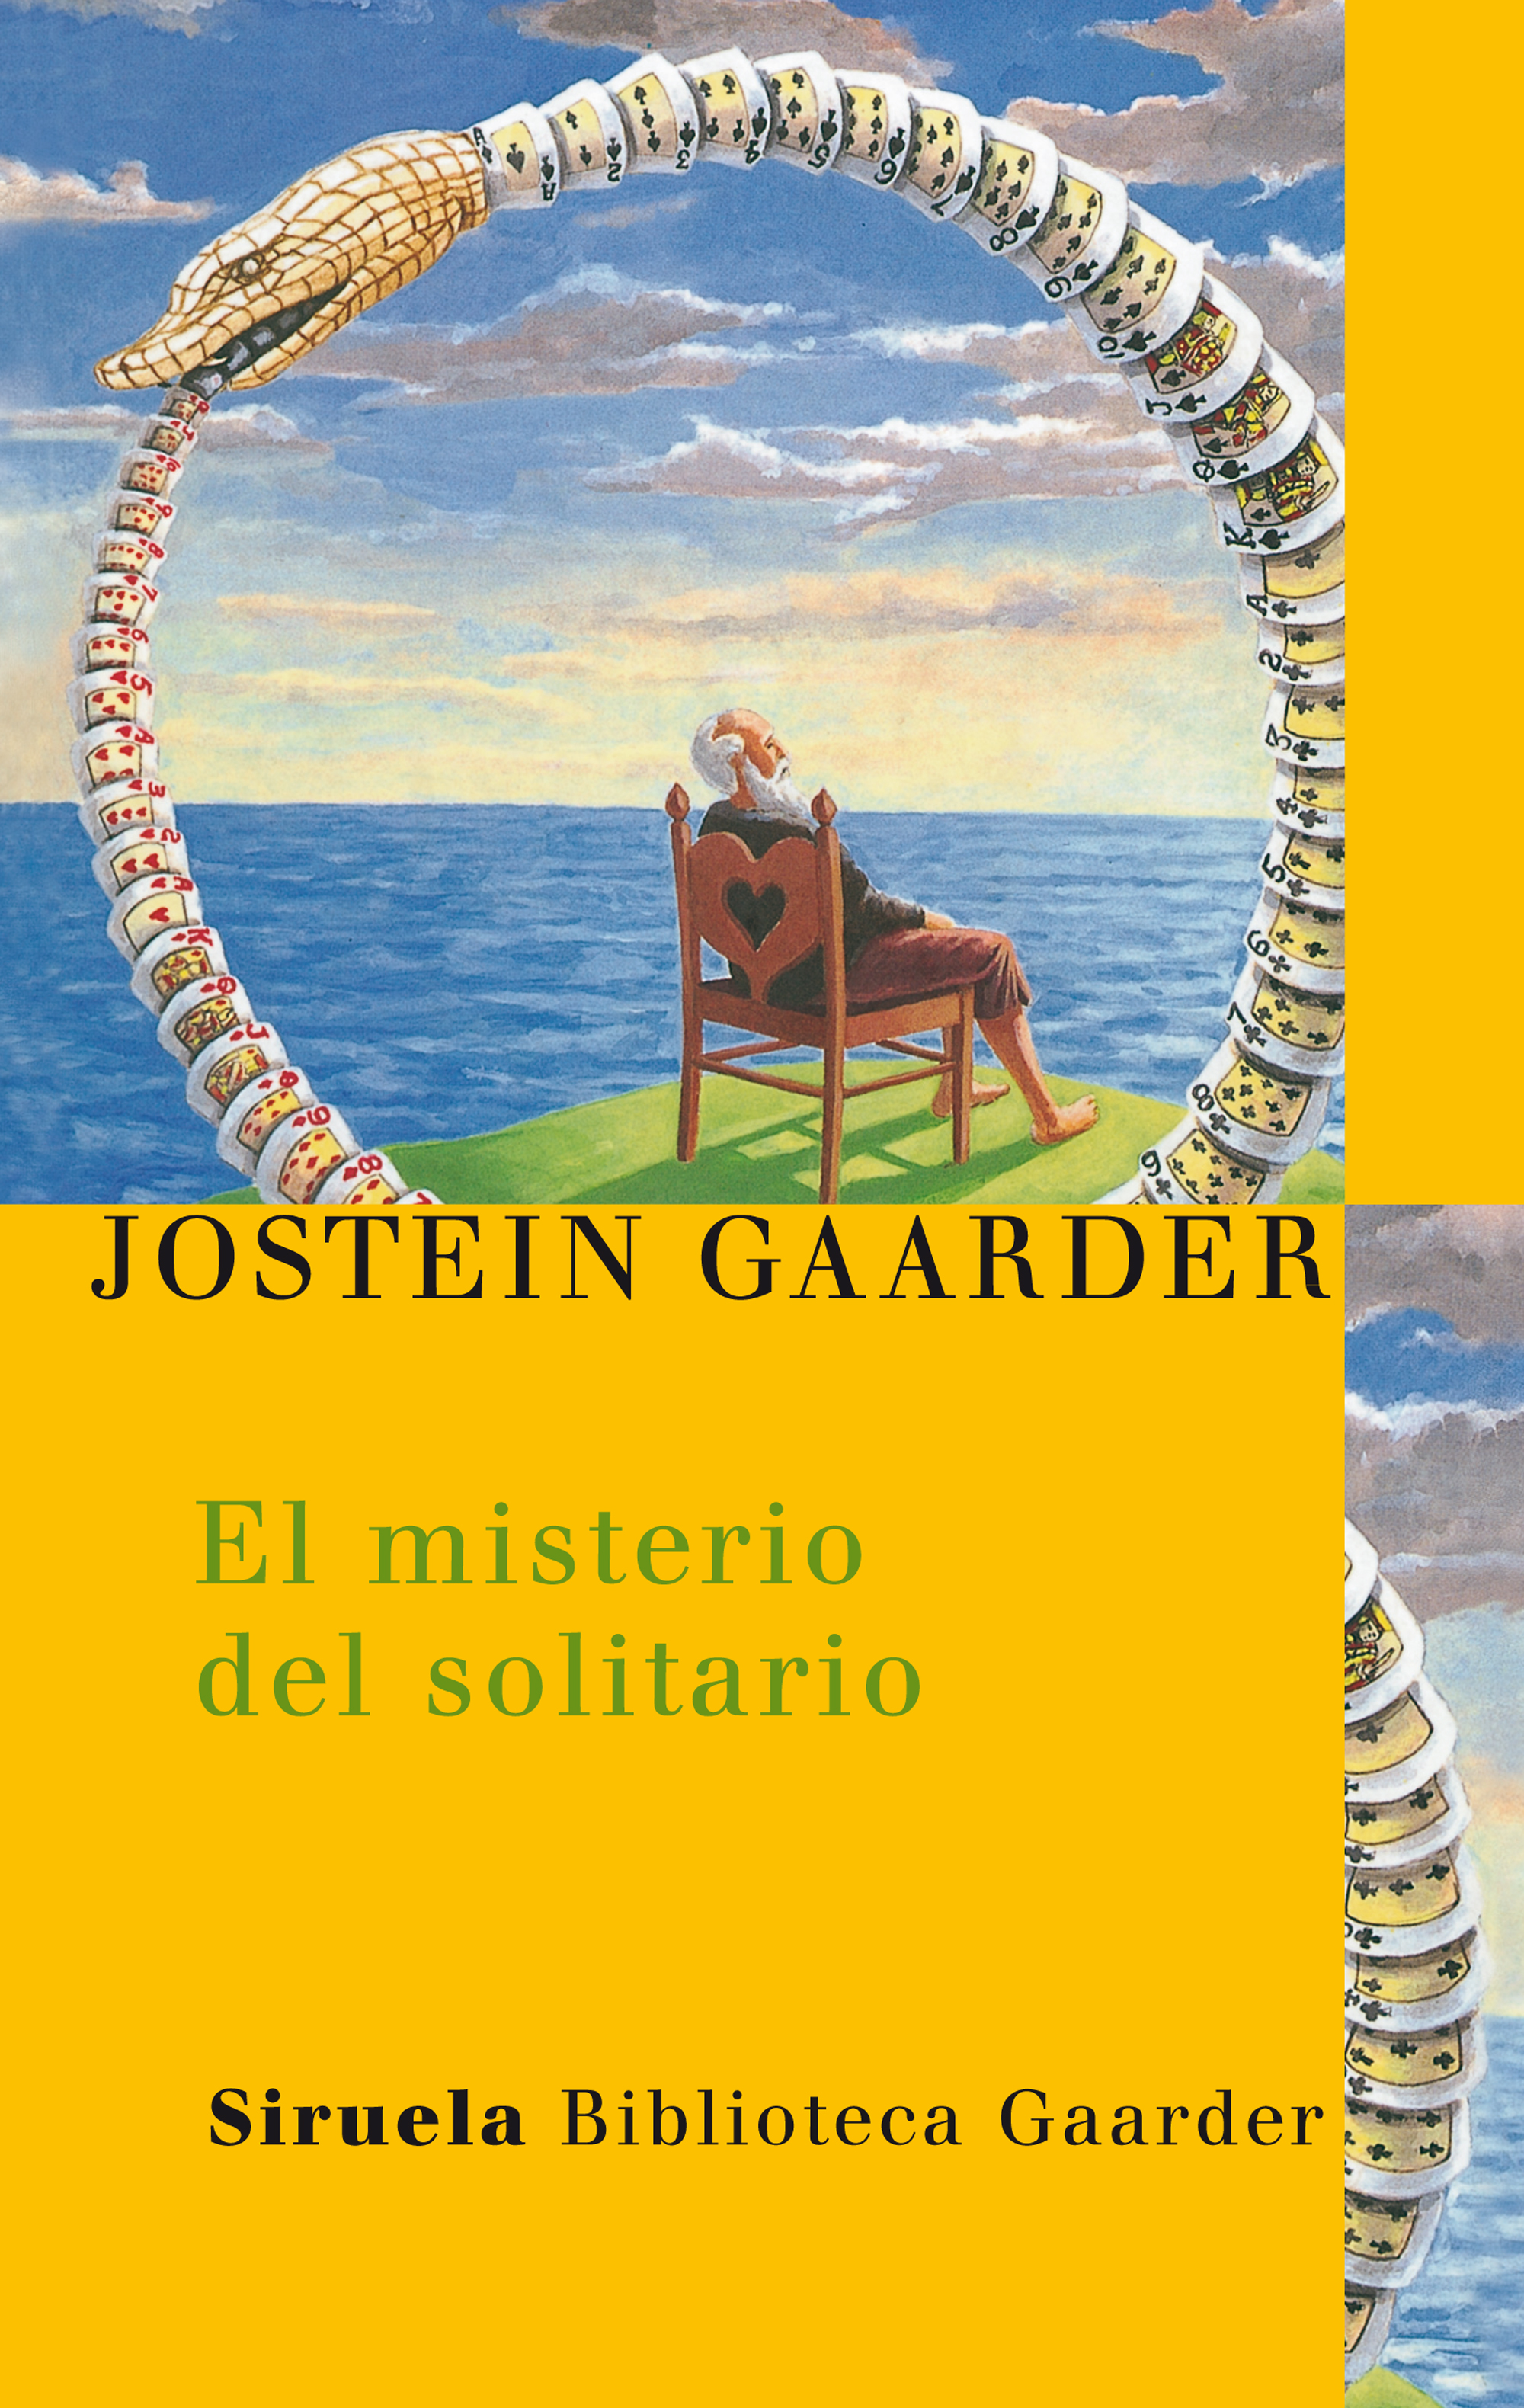 Resultado de imagen para caratula libro El misterio del solitario jostein gaarder